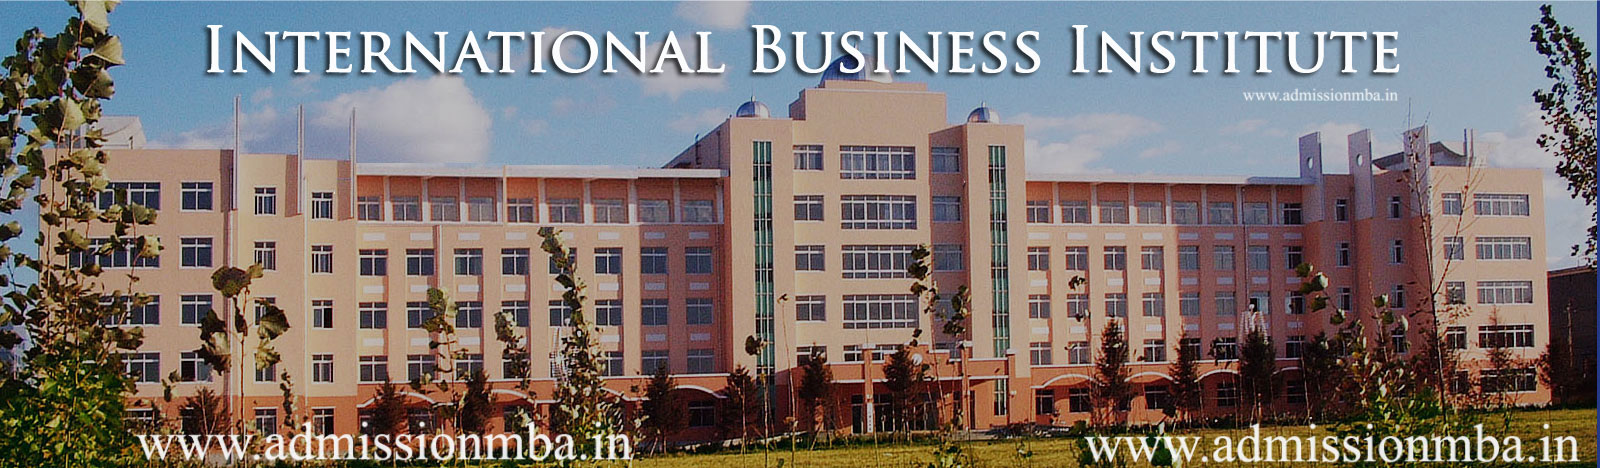 IBI Greater Noida Campus